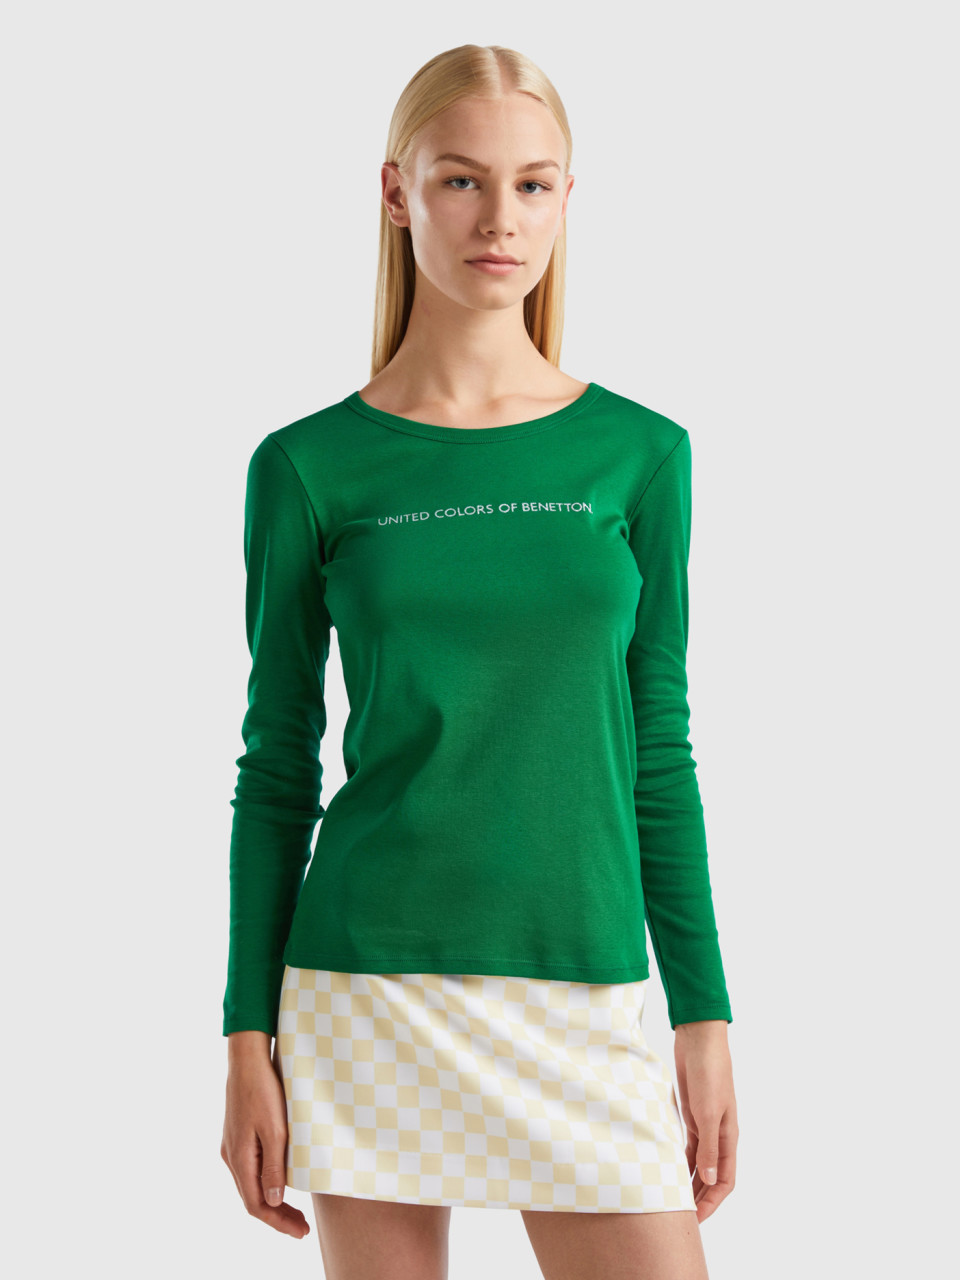 Benetton, Long Sleeve Dark Green T-shirt, Green, Women